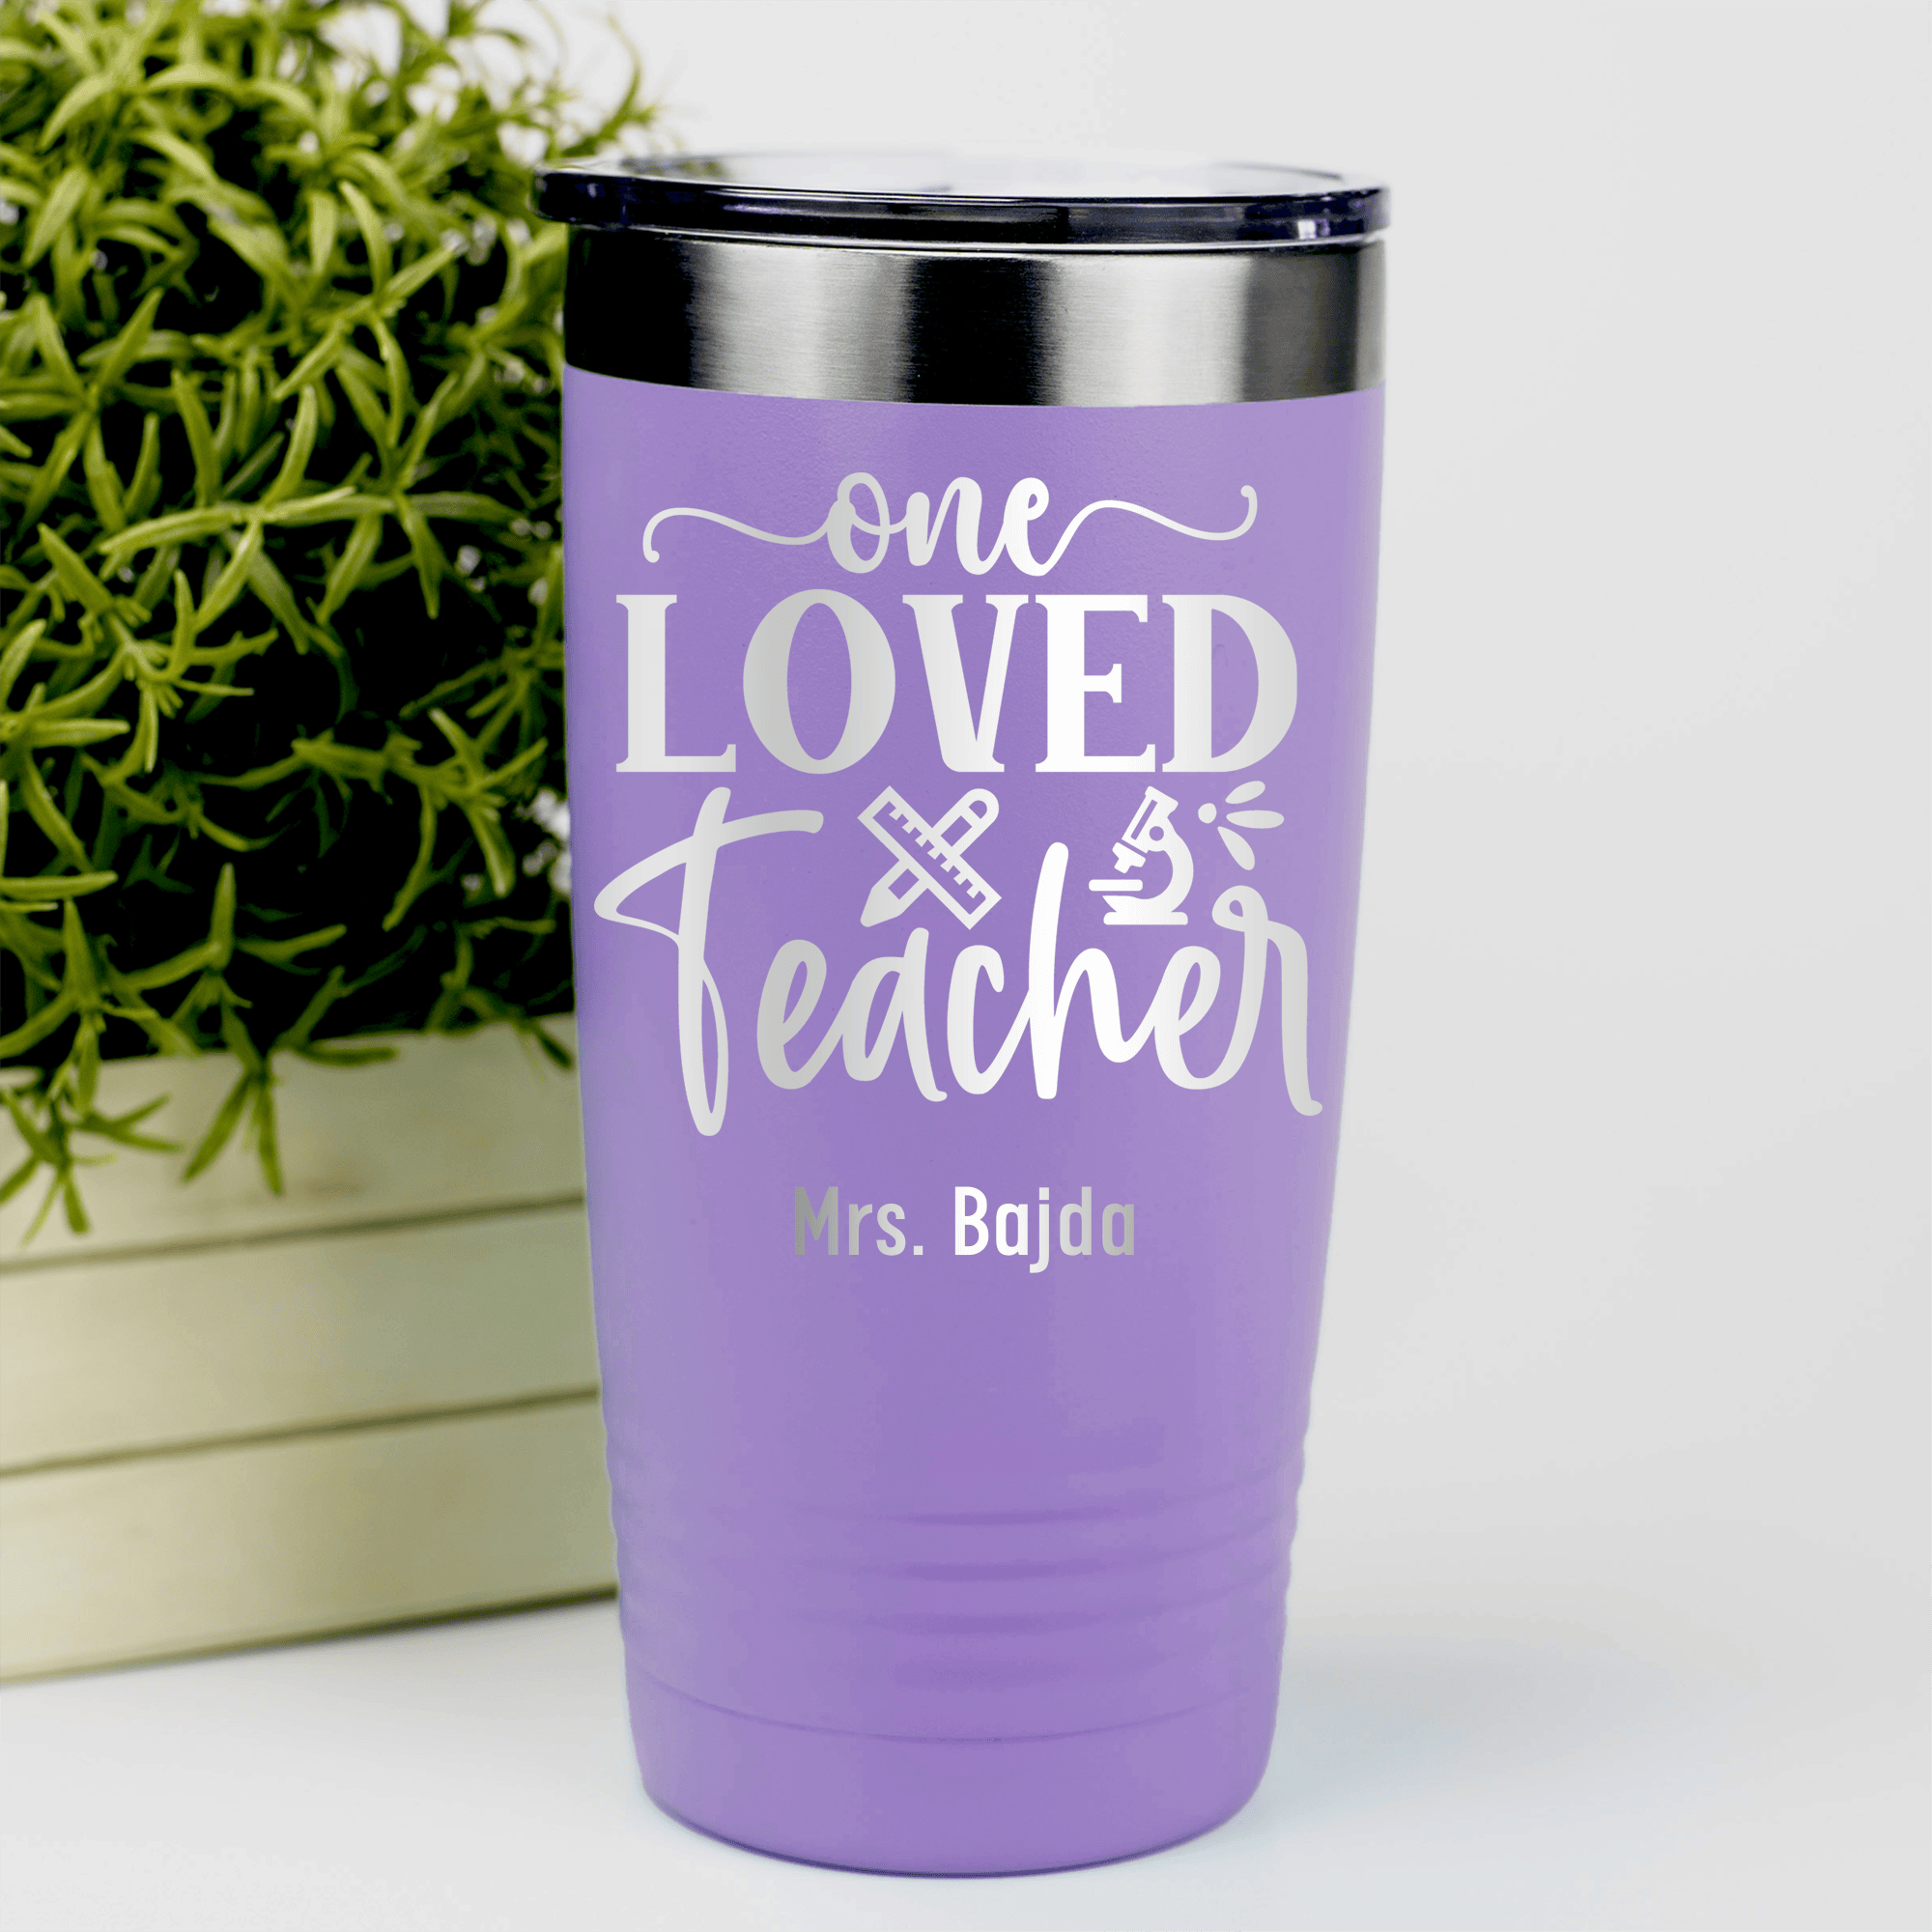 Light Purple Teacher Tumbler With One Loved Teacher Design